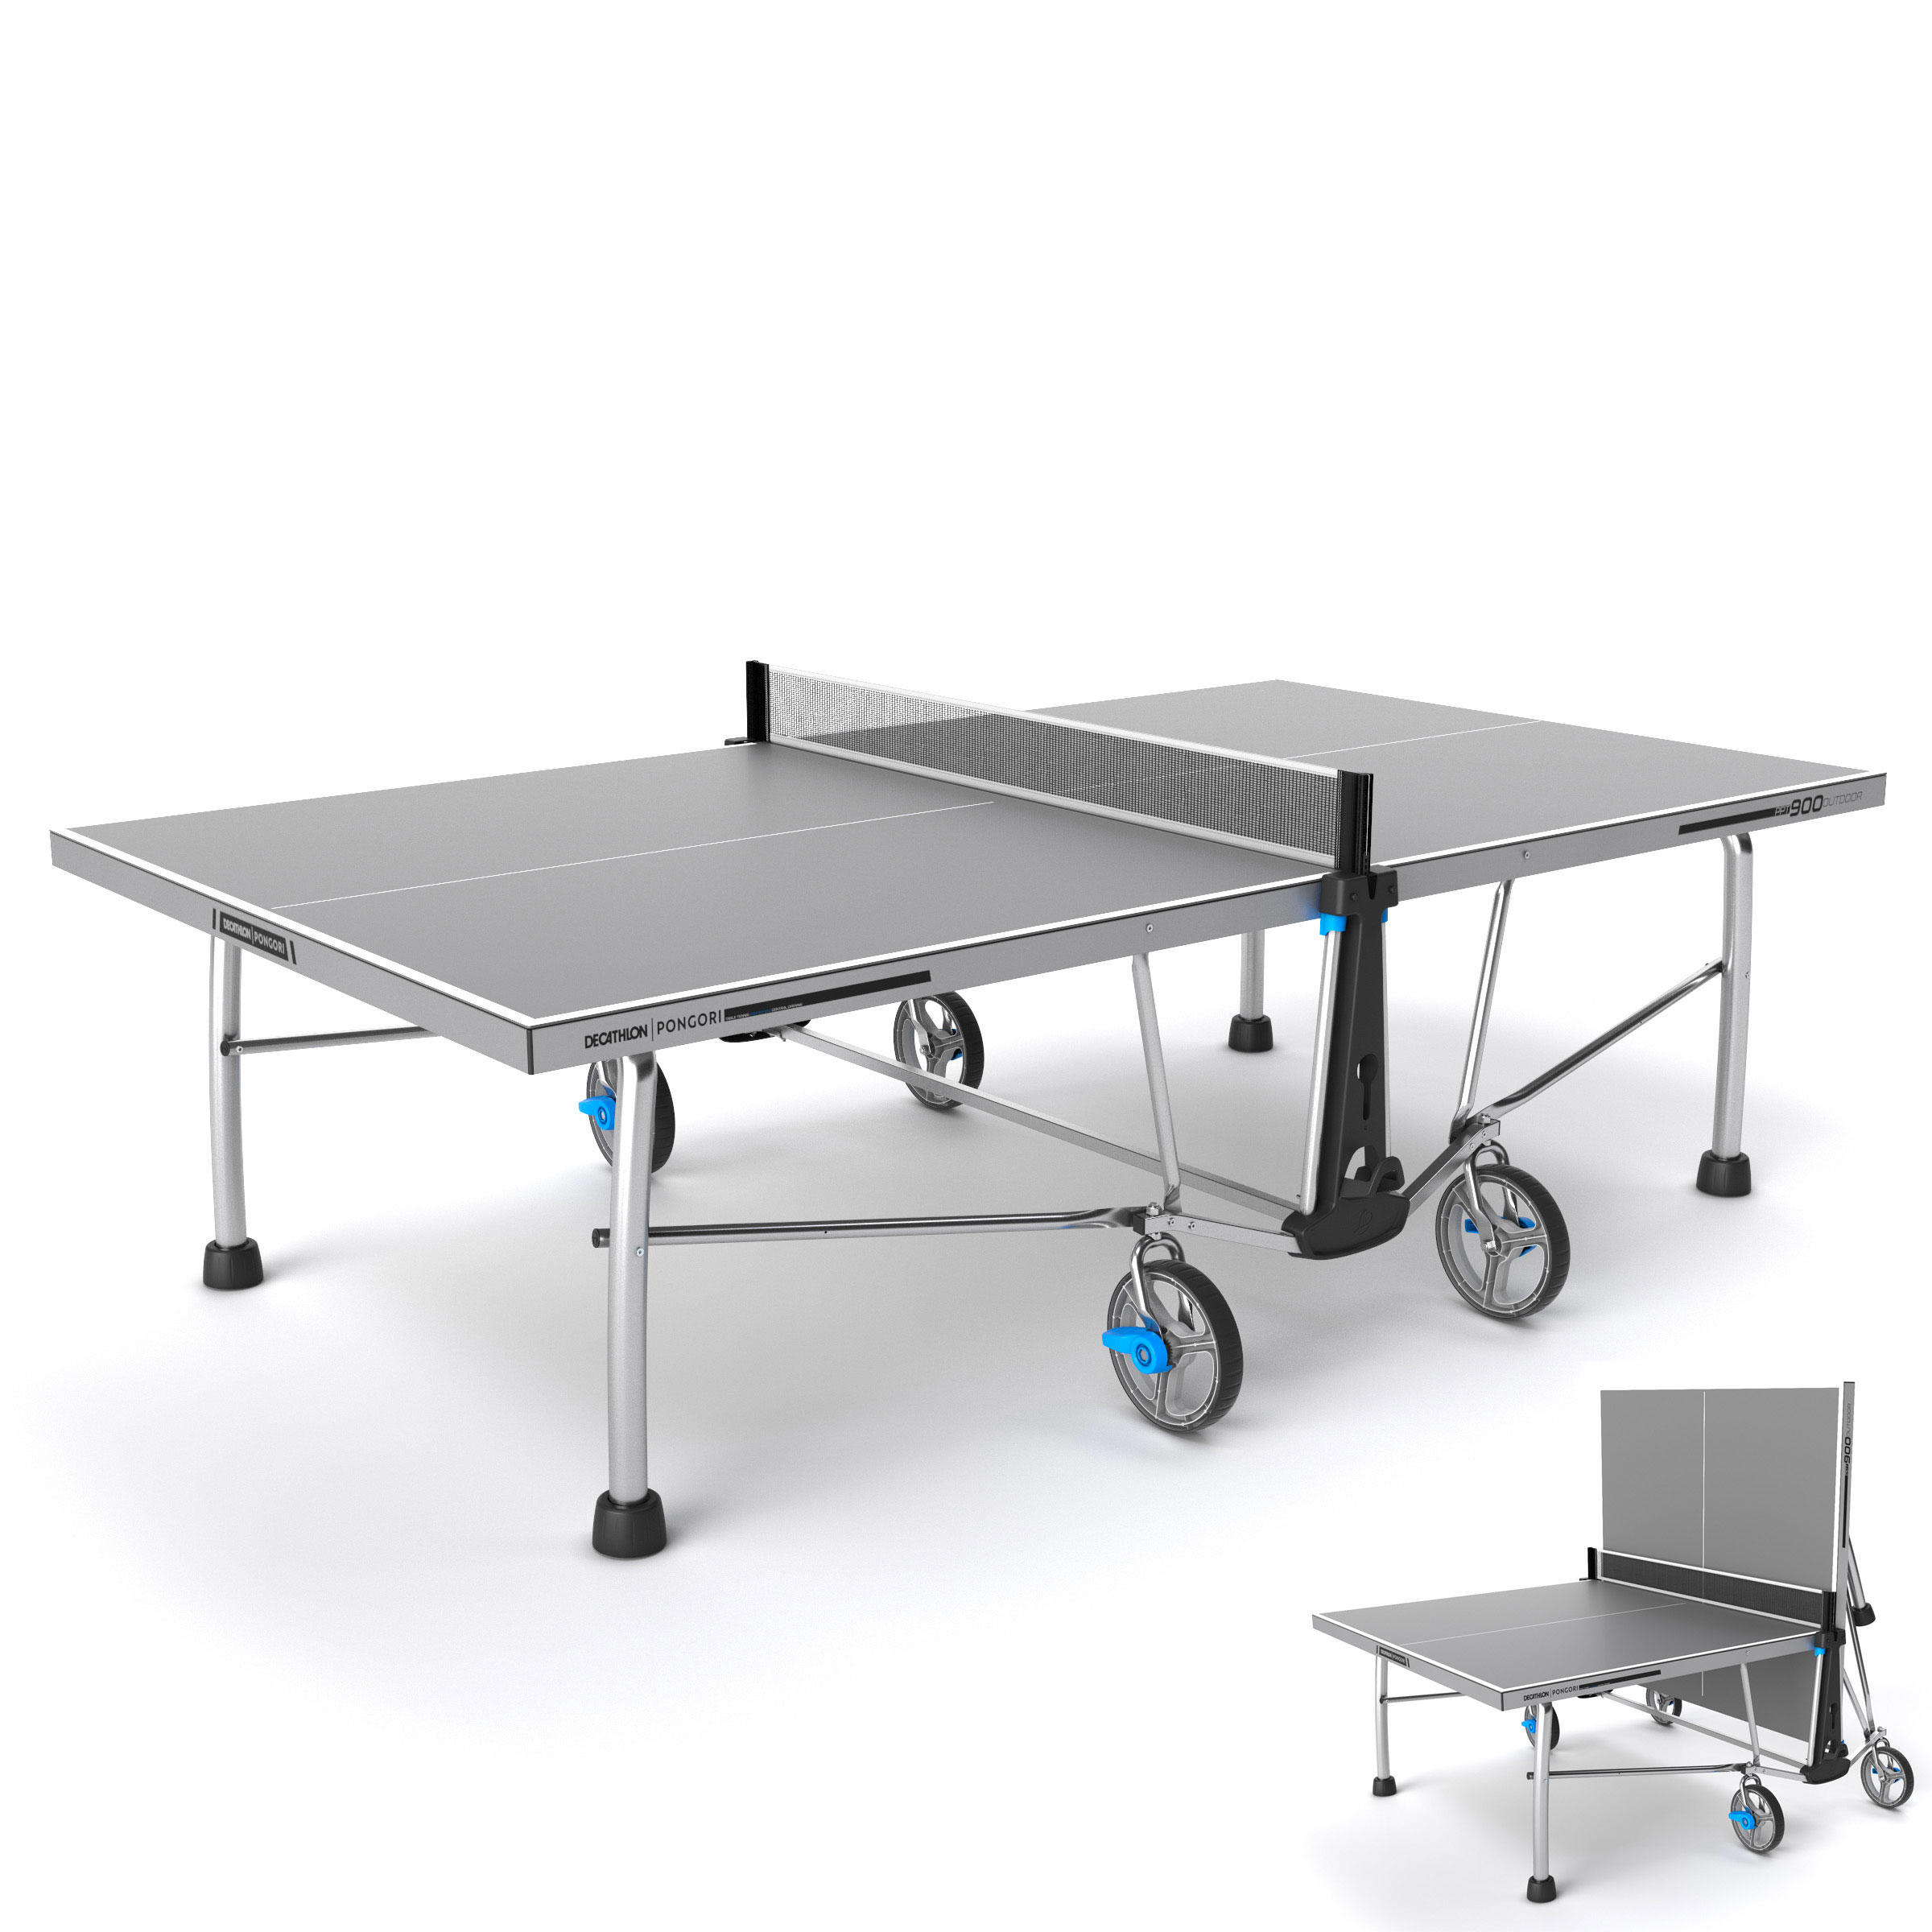 table tennis table decathlon